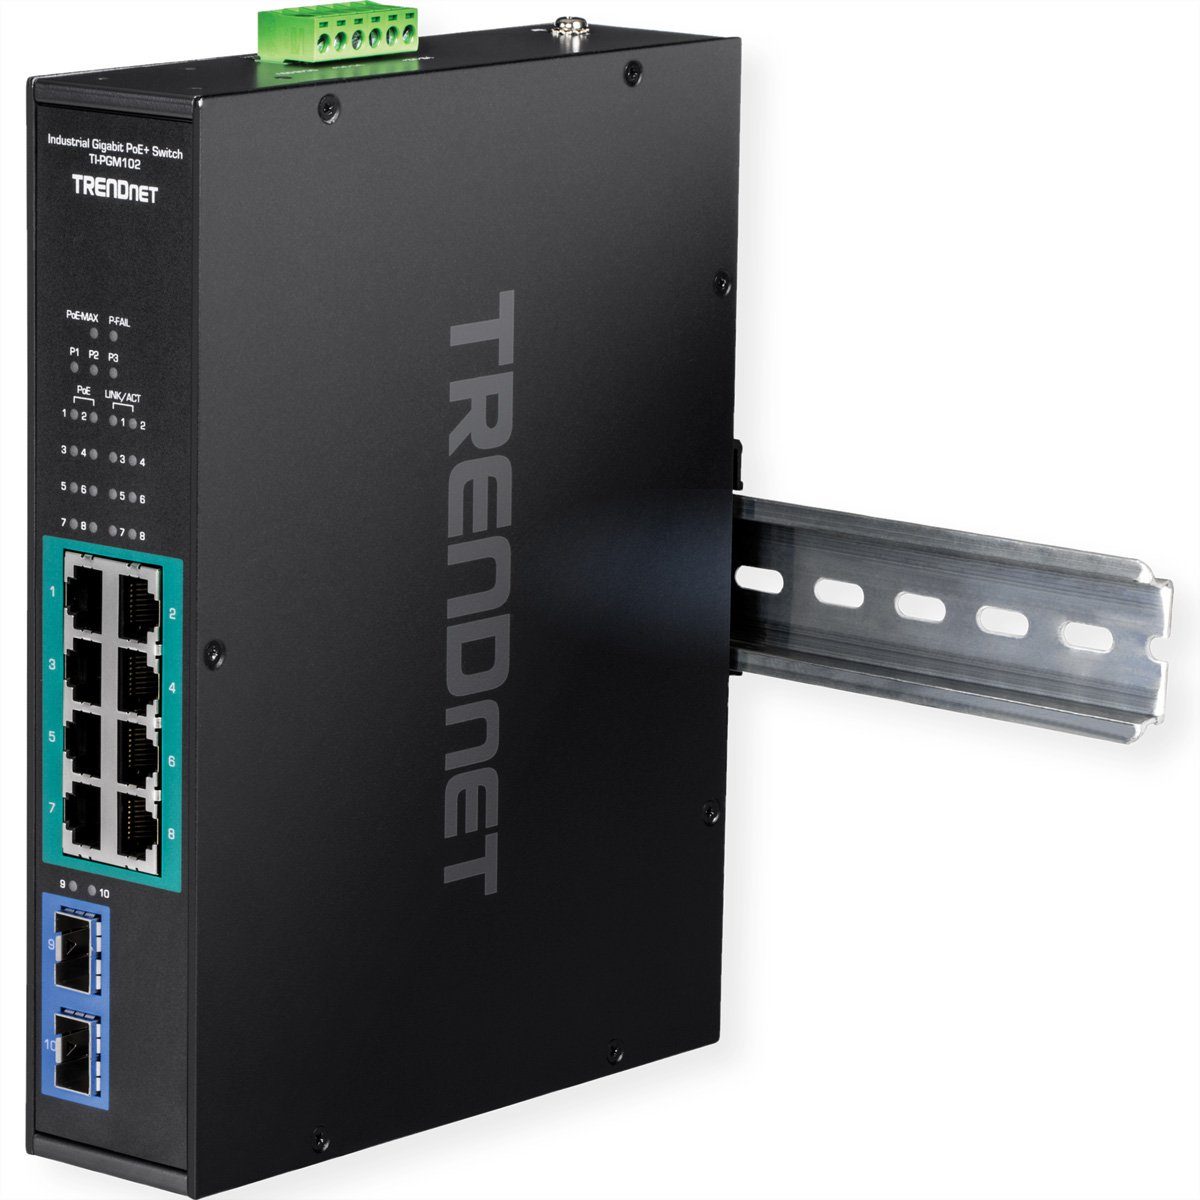 Port Netzwerk-Switch TI-PGM102 PoE+ Industrial Gigabit Trendnet Switch 10 Rail